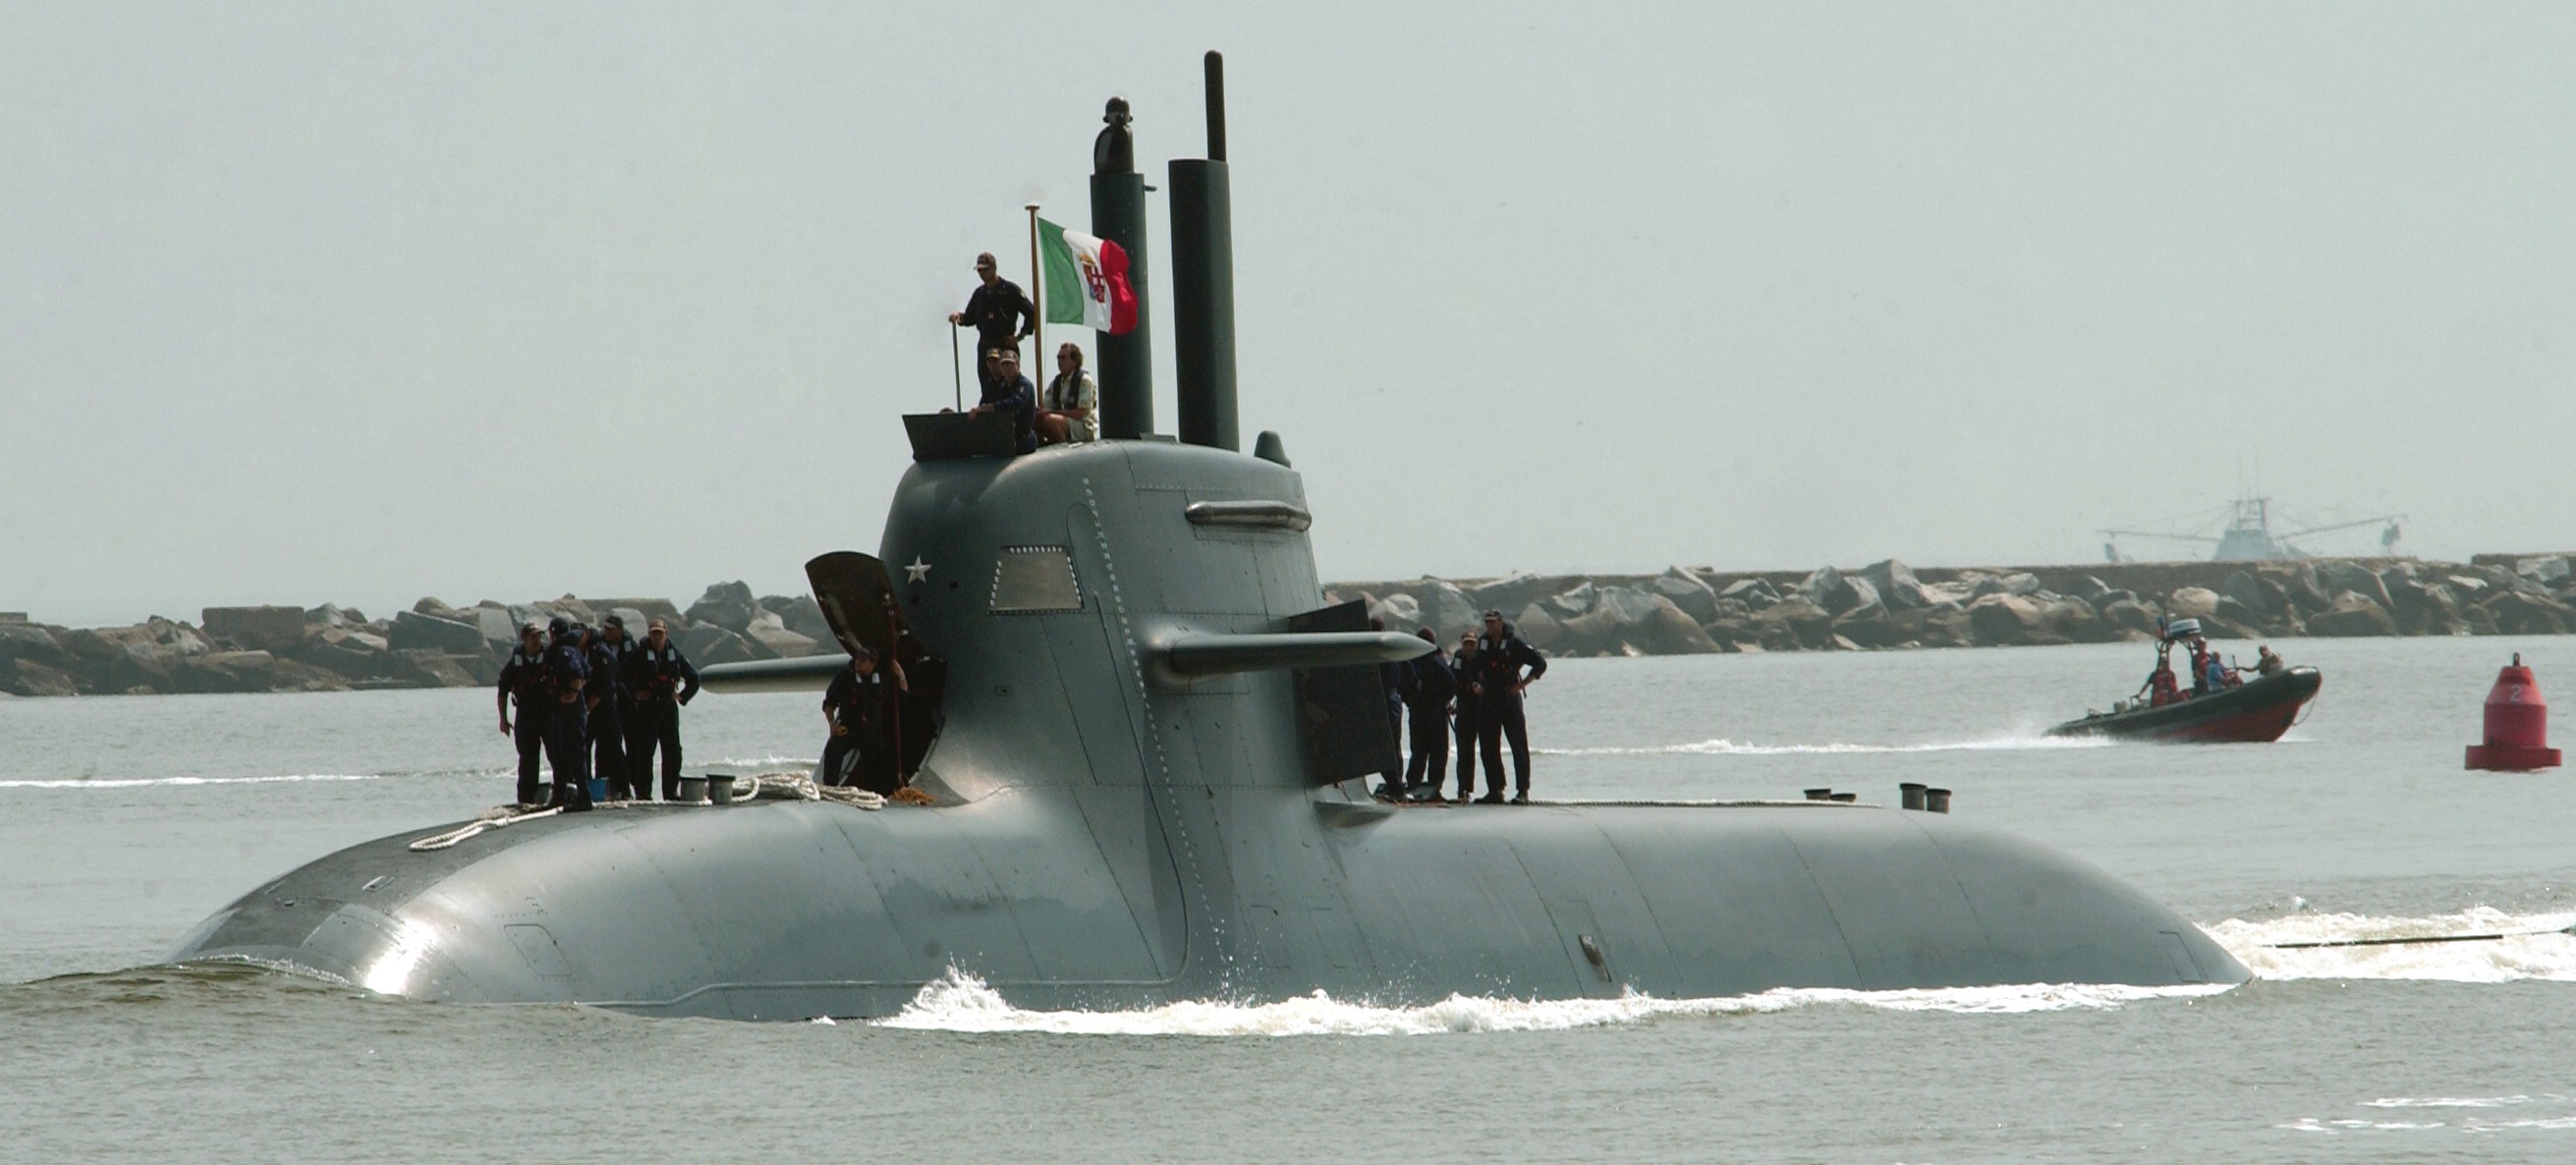 s-526 salvatore todaro its smg type 212 class submarine italian navy marina militare 05